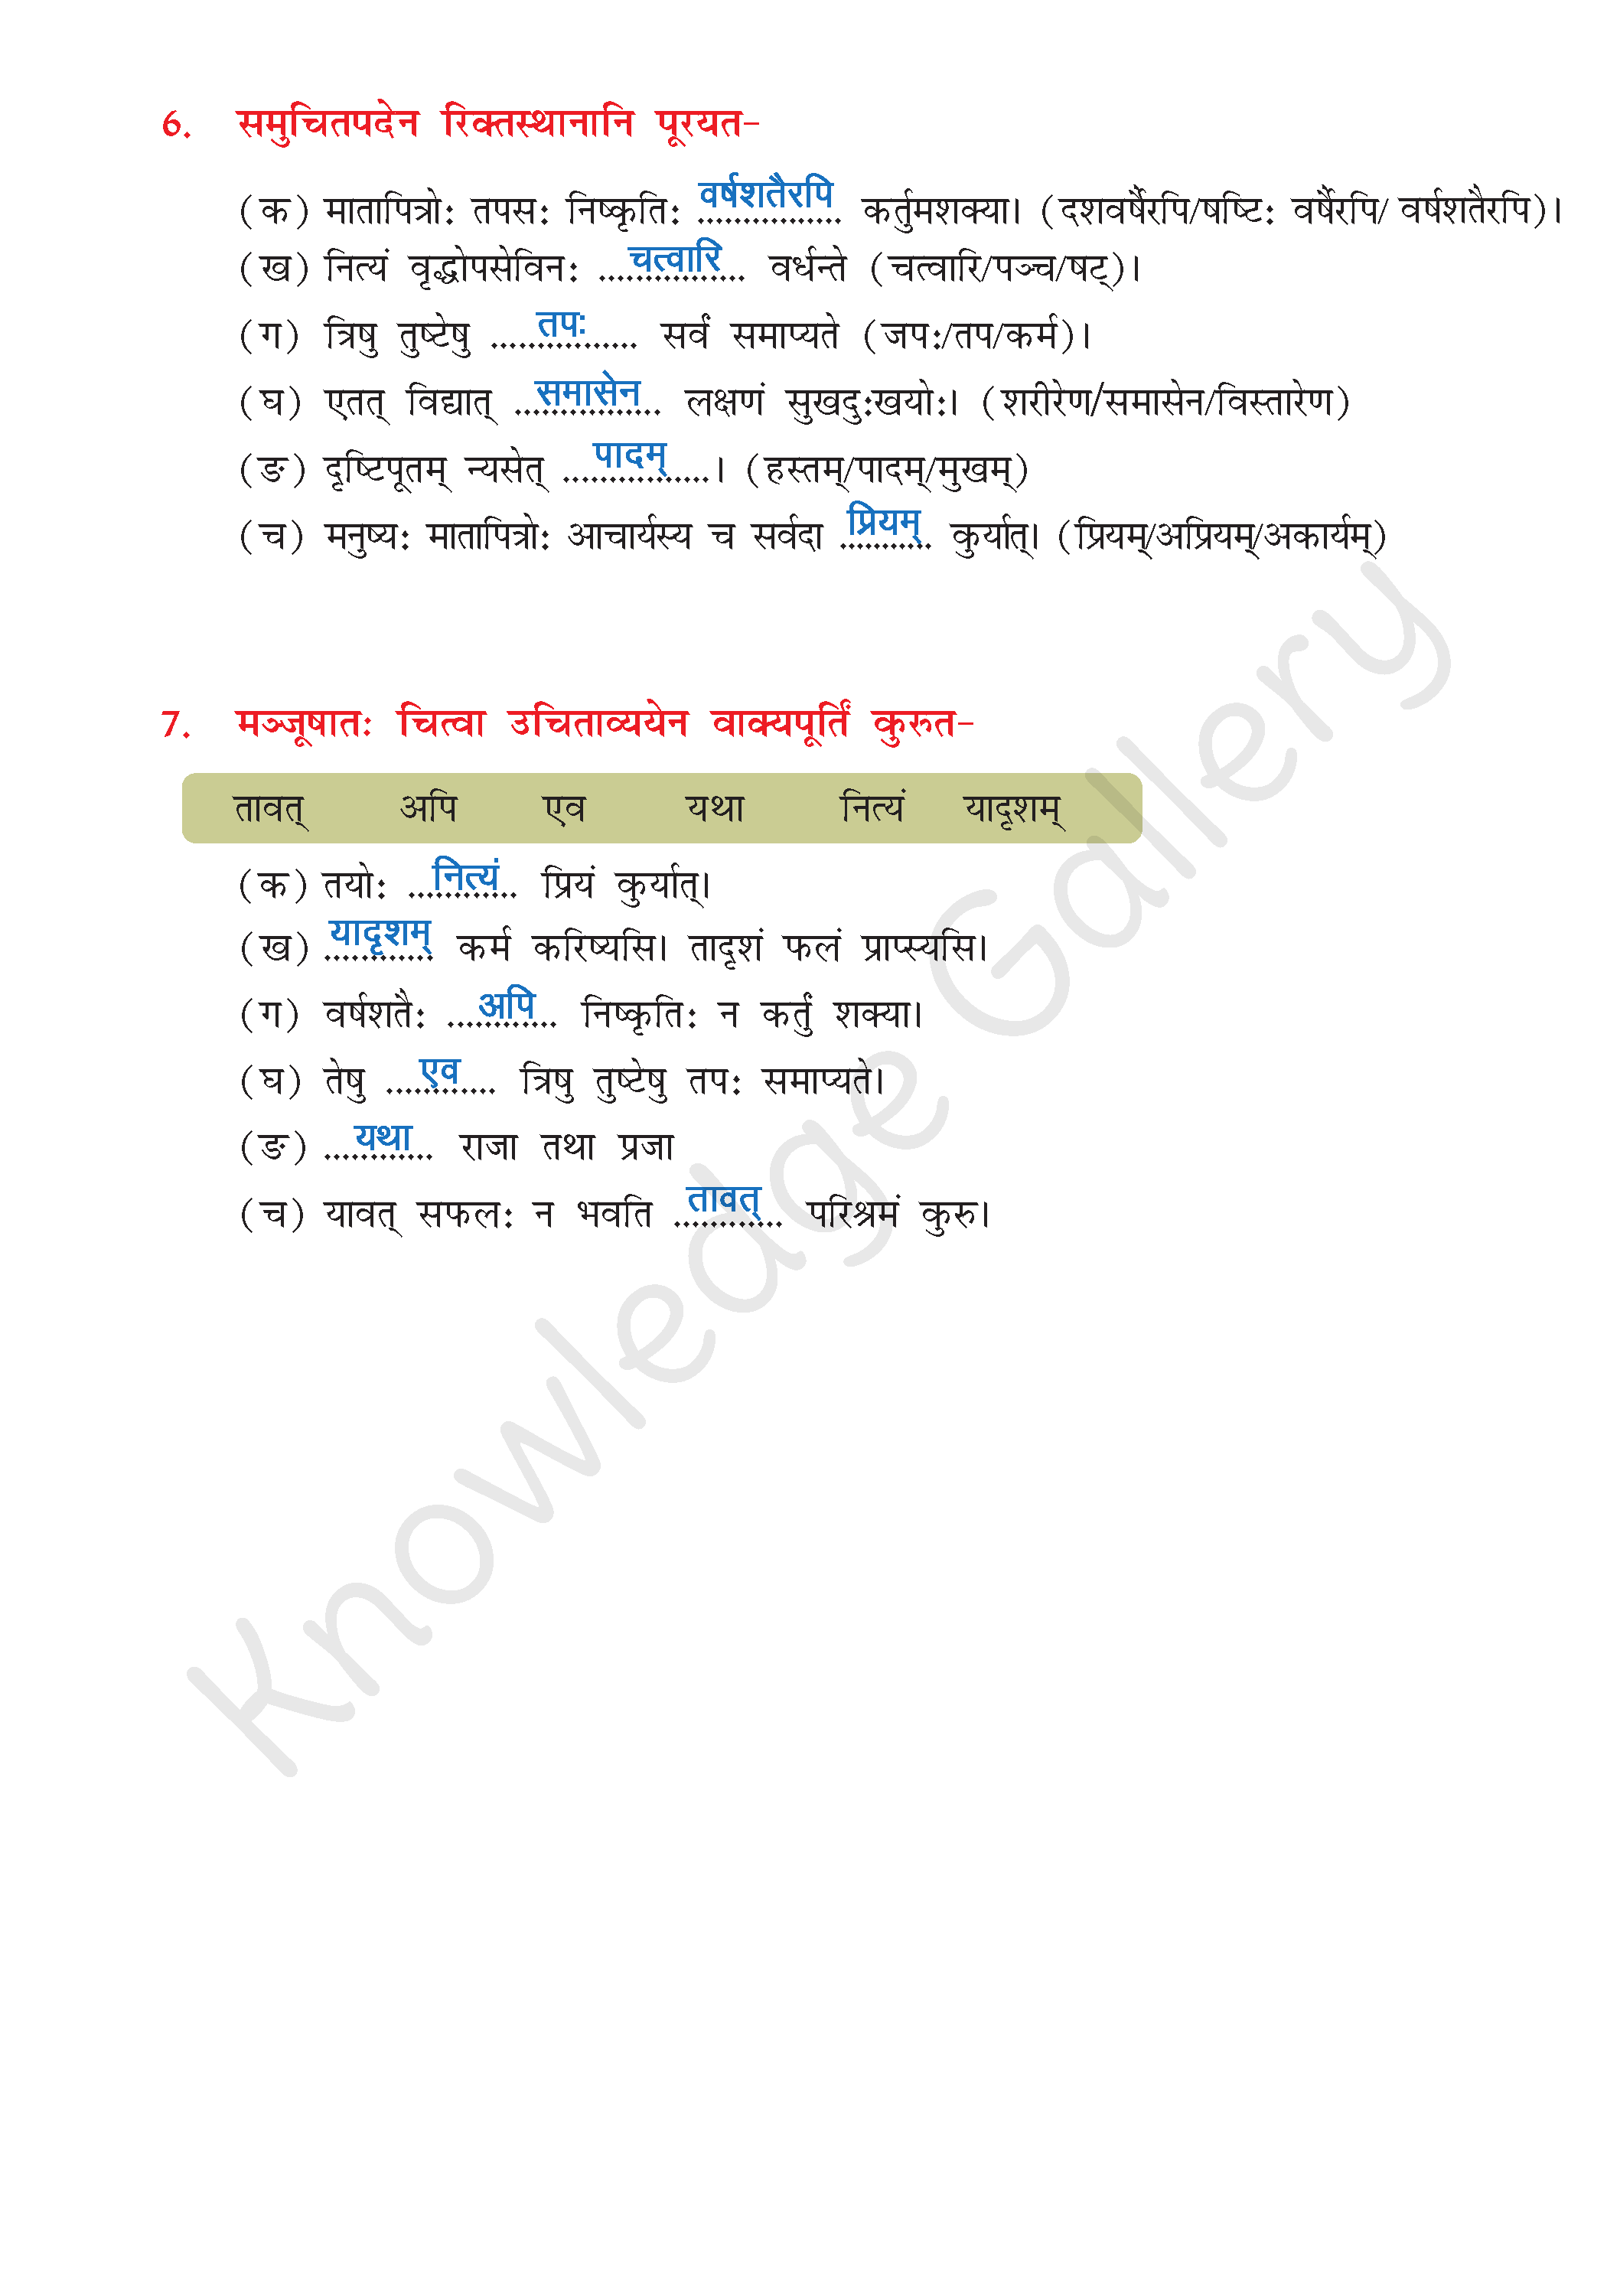 NCERT Solution For Class 8 Sanskrit Chapter 10 part 5